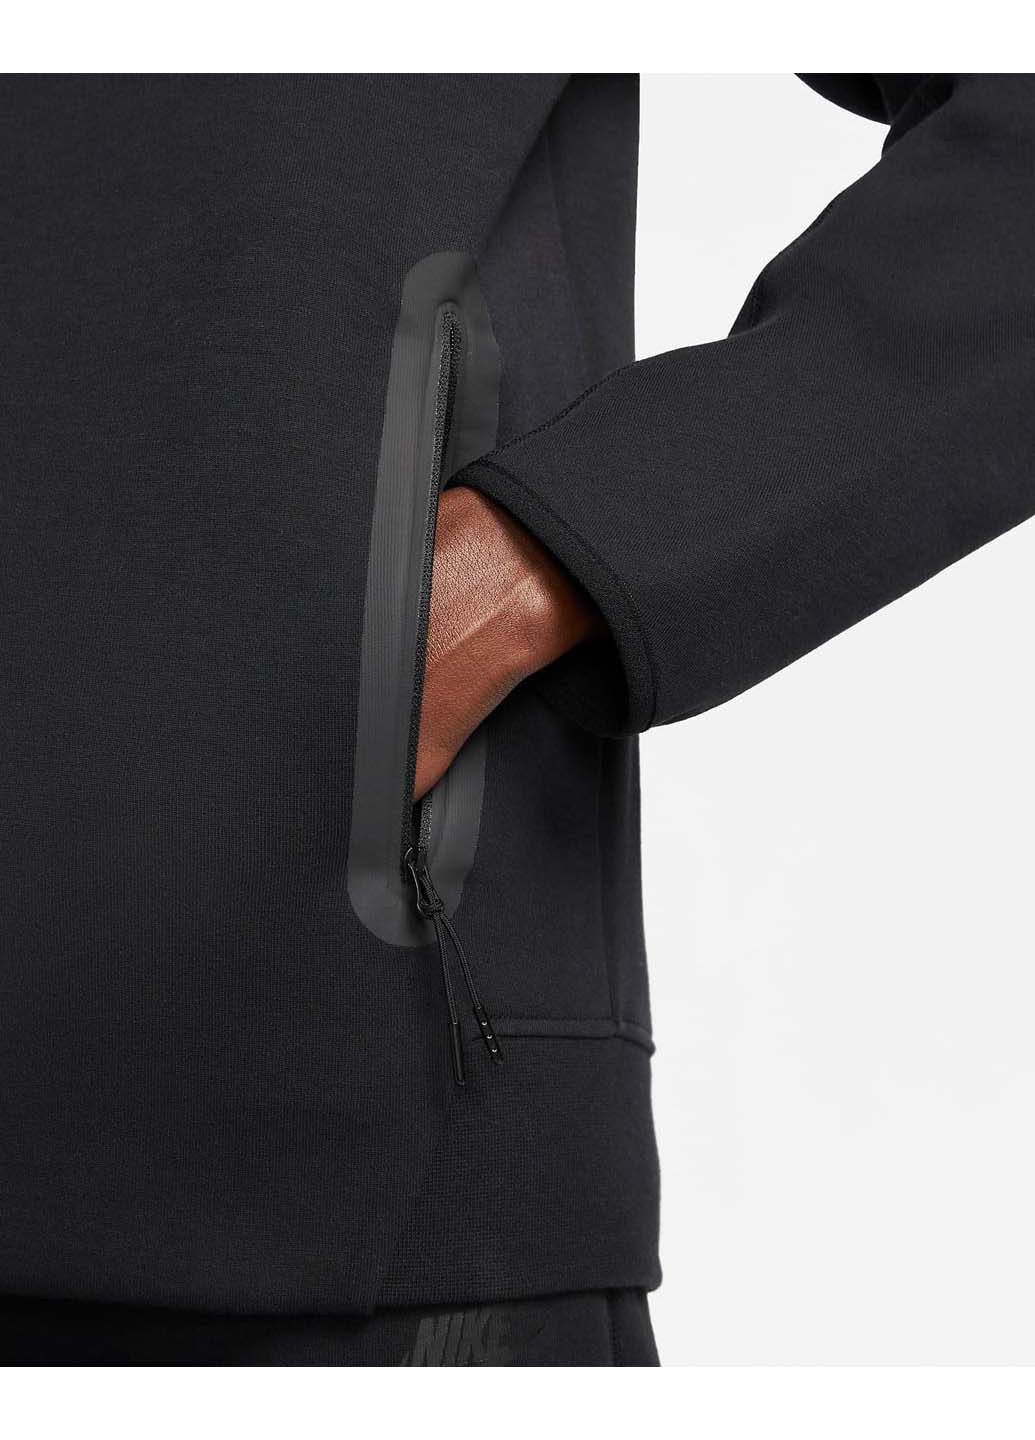 Кофта Sportswear Tech Fleece Windrunner Full-Zip Hoodie Nike (269460329)